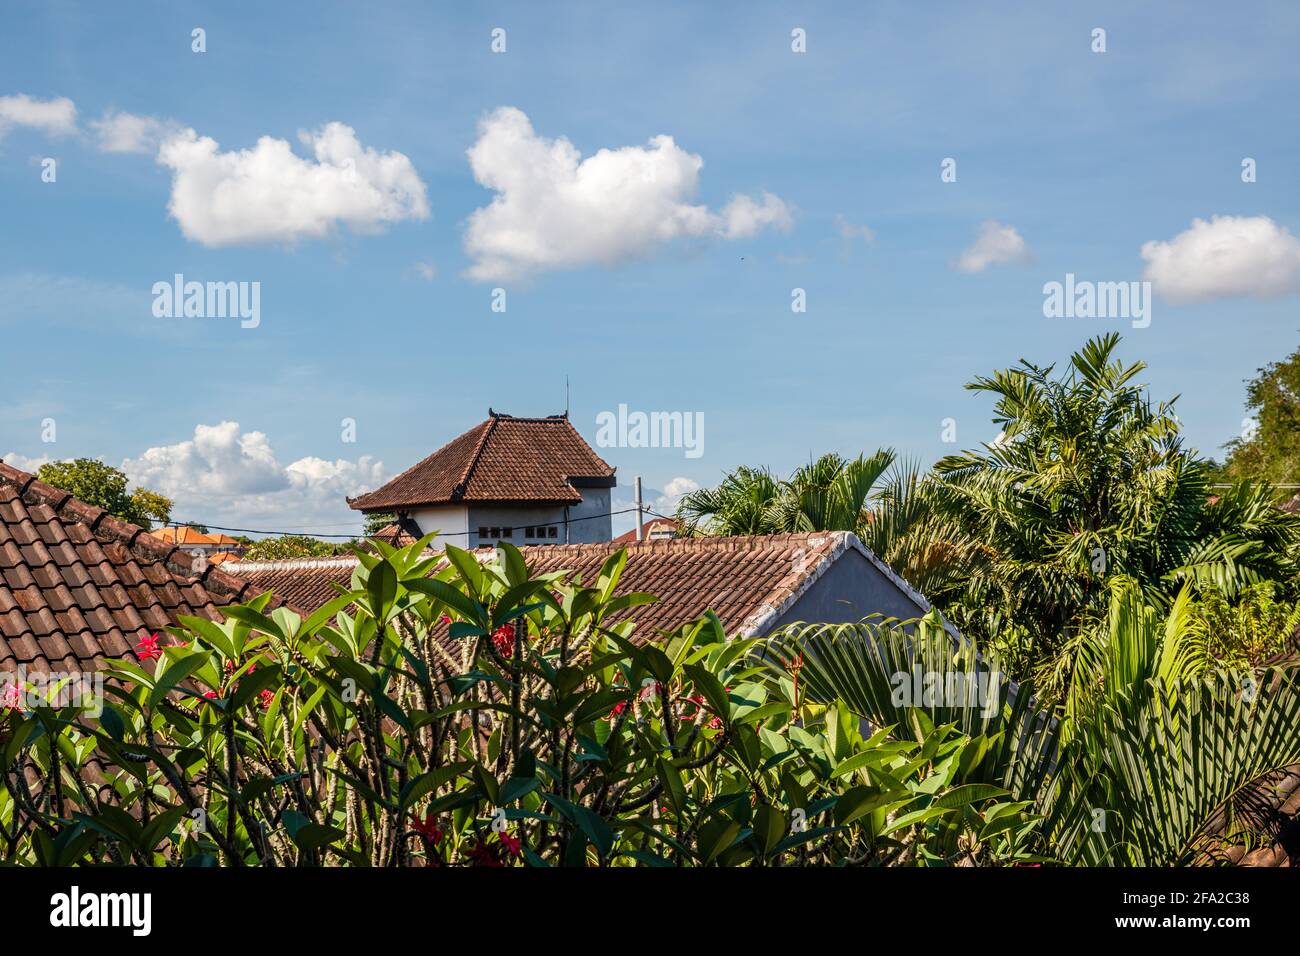 Vue sur les toits de maisons résidentielles carrelés de brun, les arbres, le ciel bleu avec des nuages blancs. Bali, Indonésie. Banque D'Images